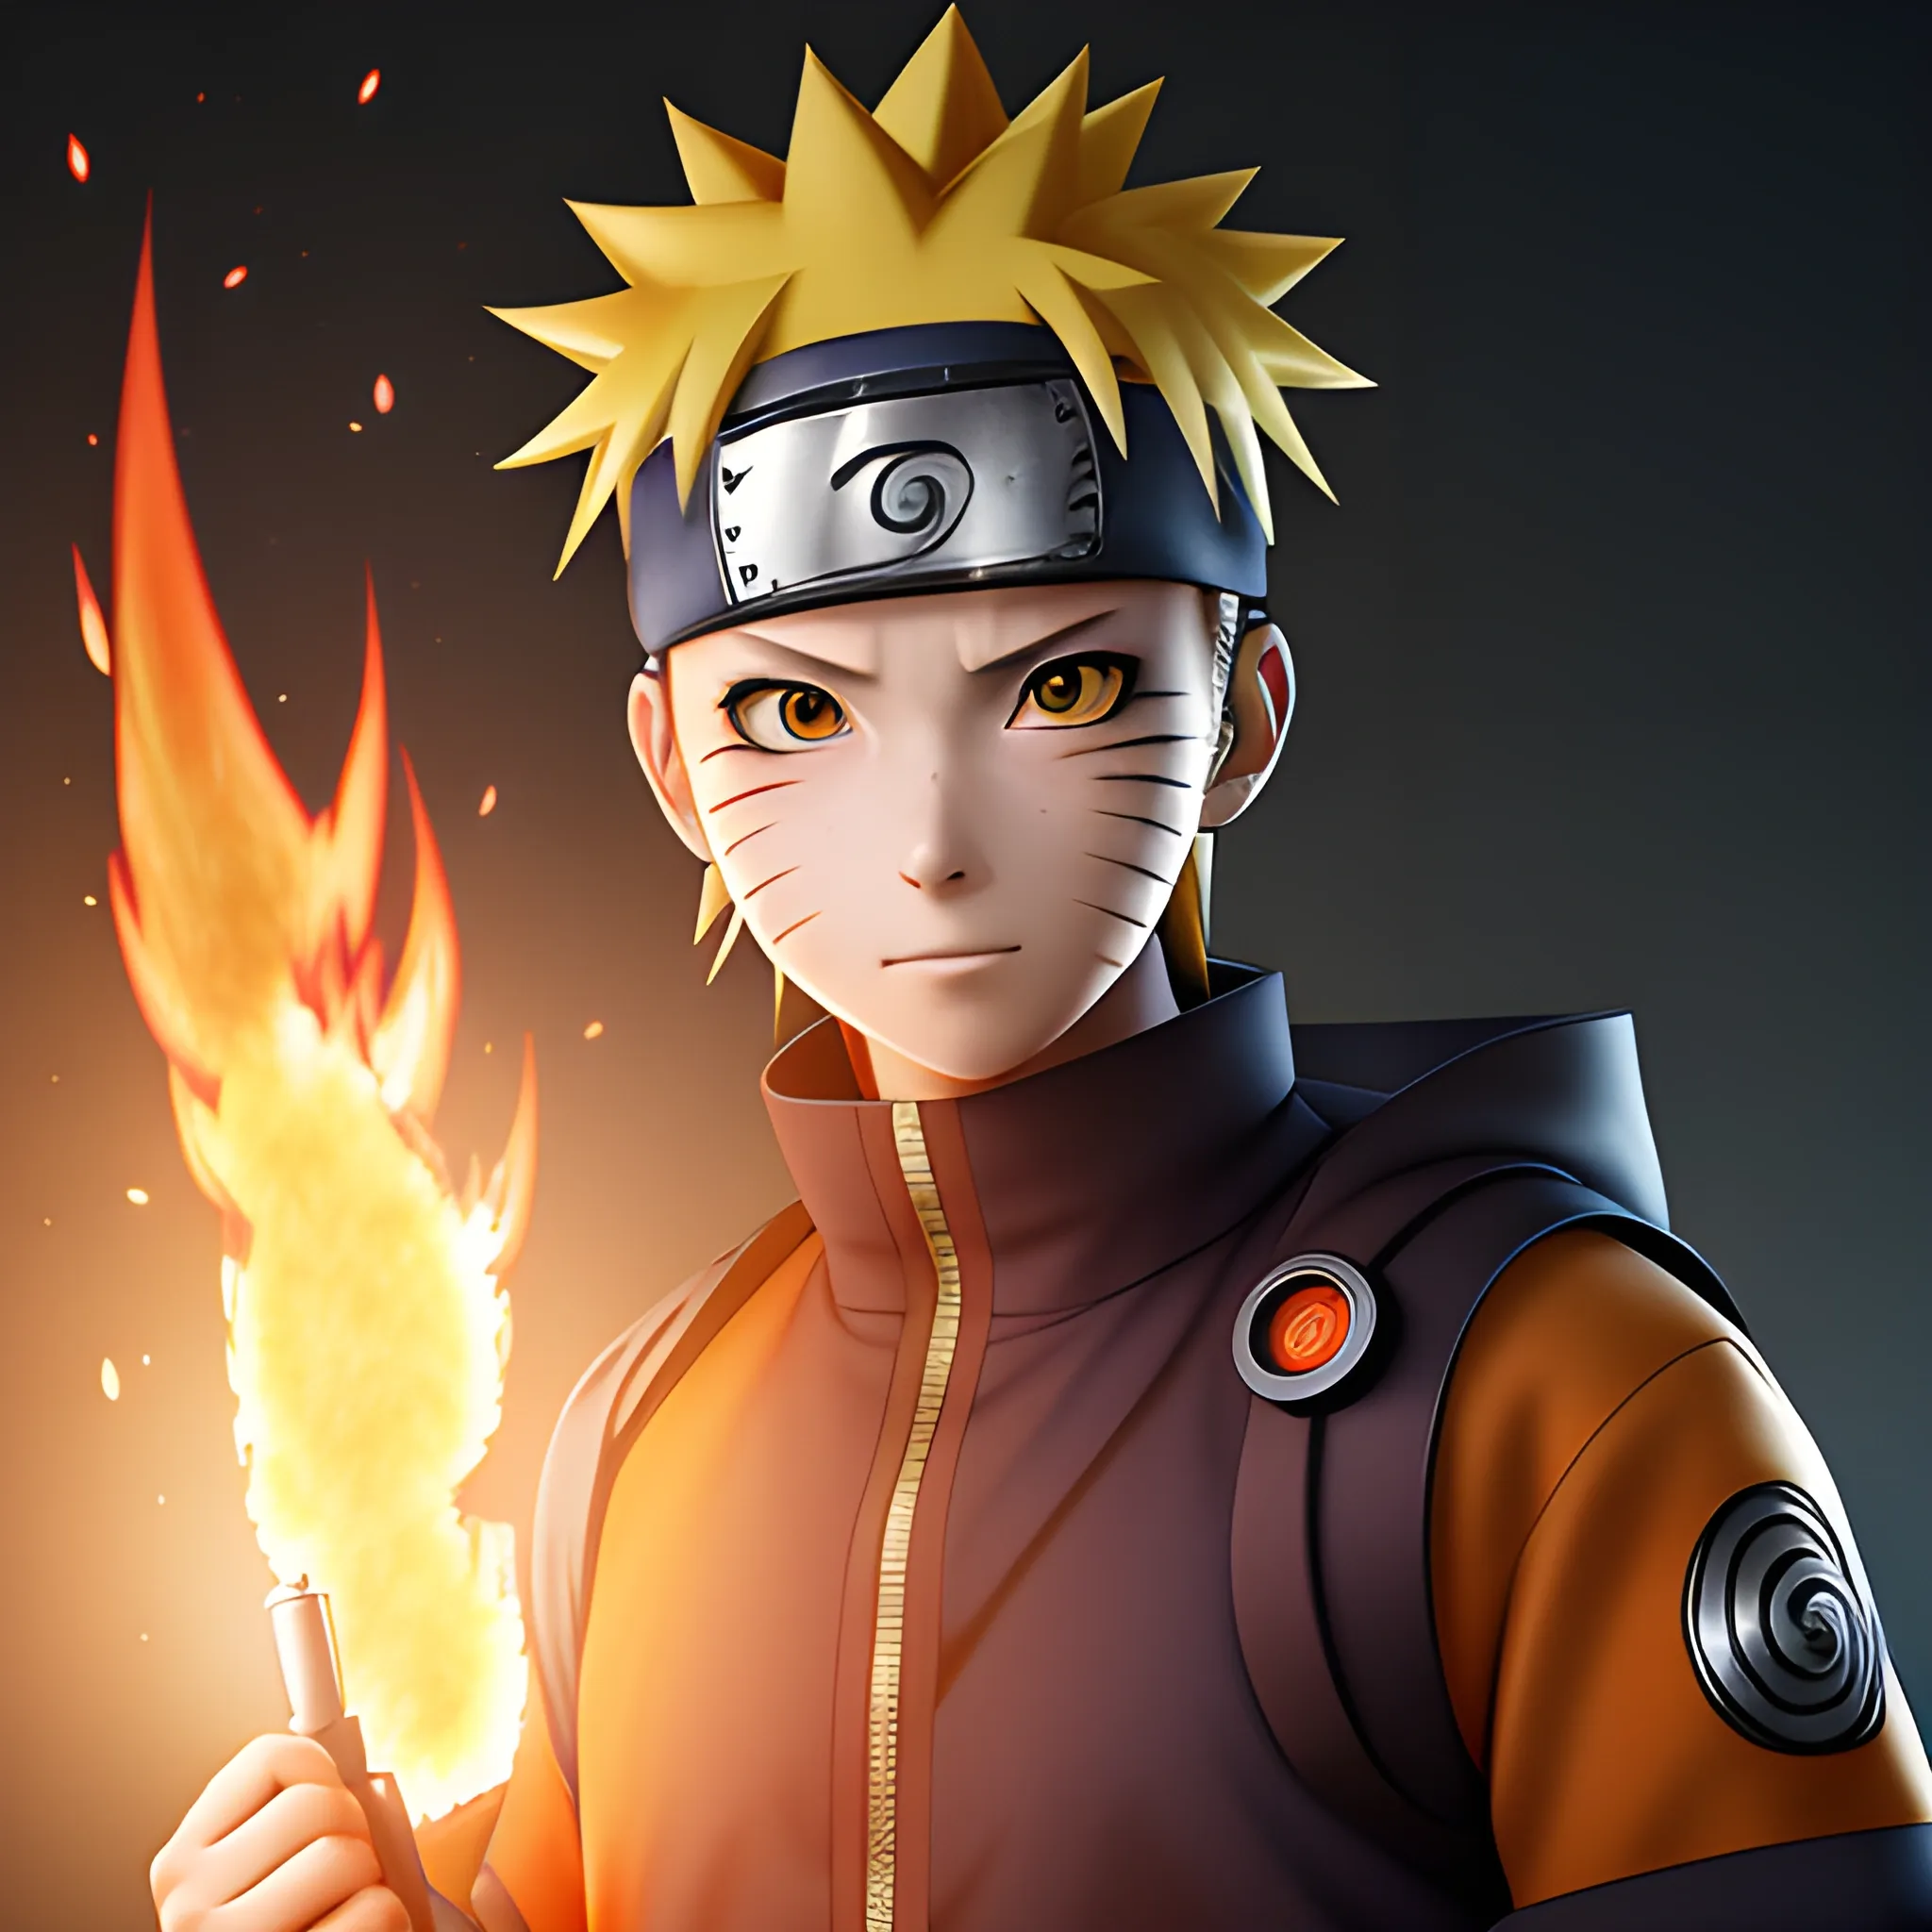 Naruto uzumaki, Naruto shippuden characters, Naruto images